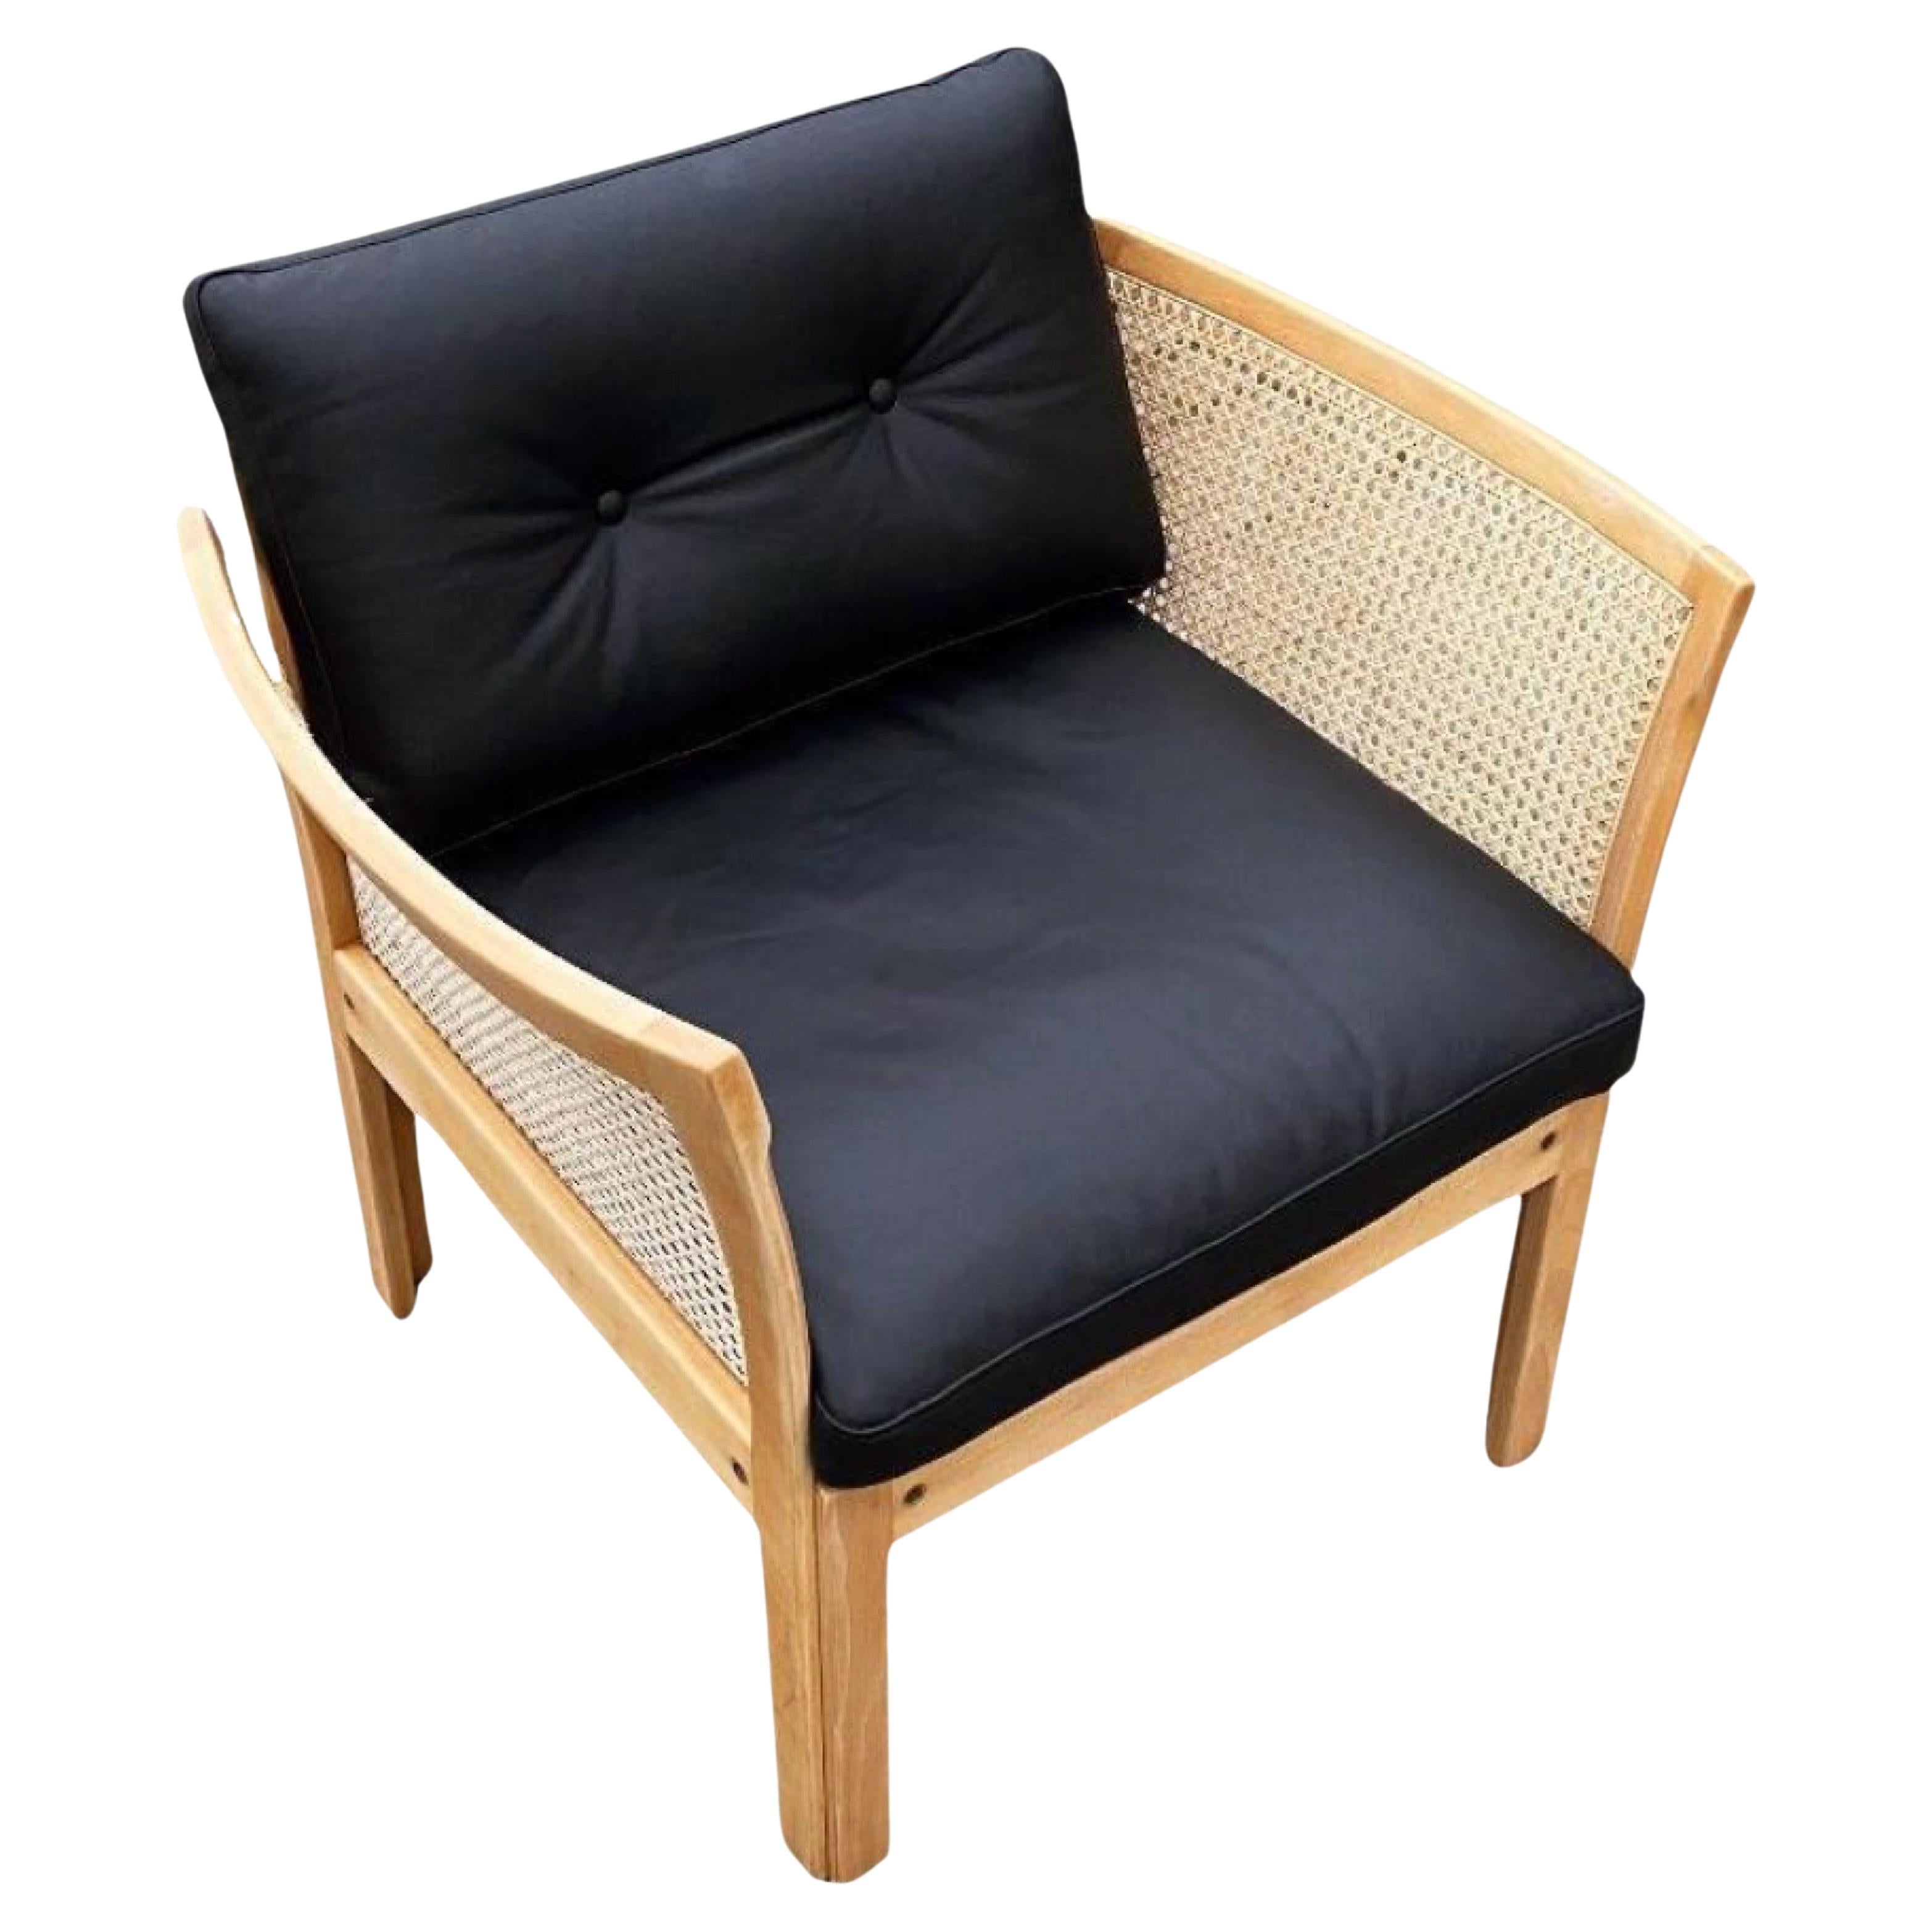 Lounge chair by Illum Wikkelsø, Model Plexus